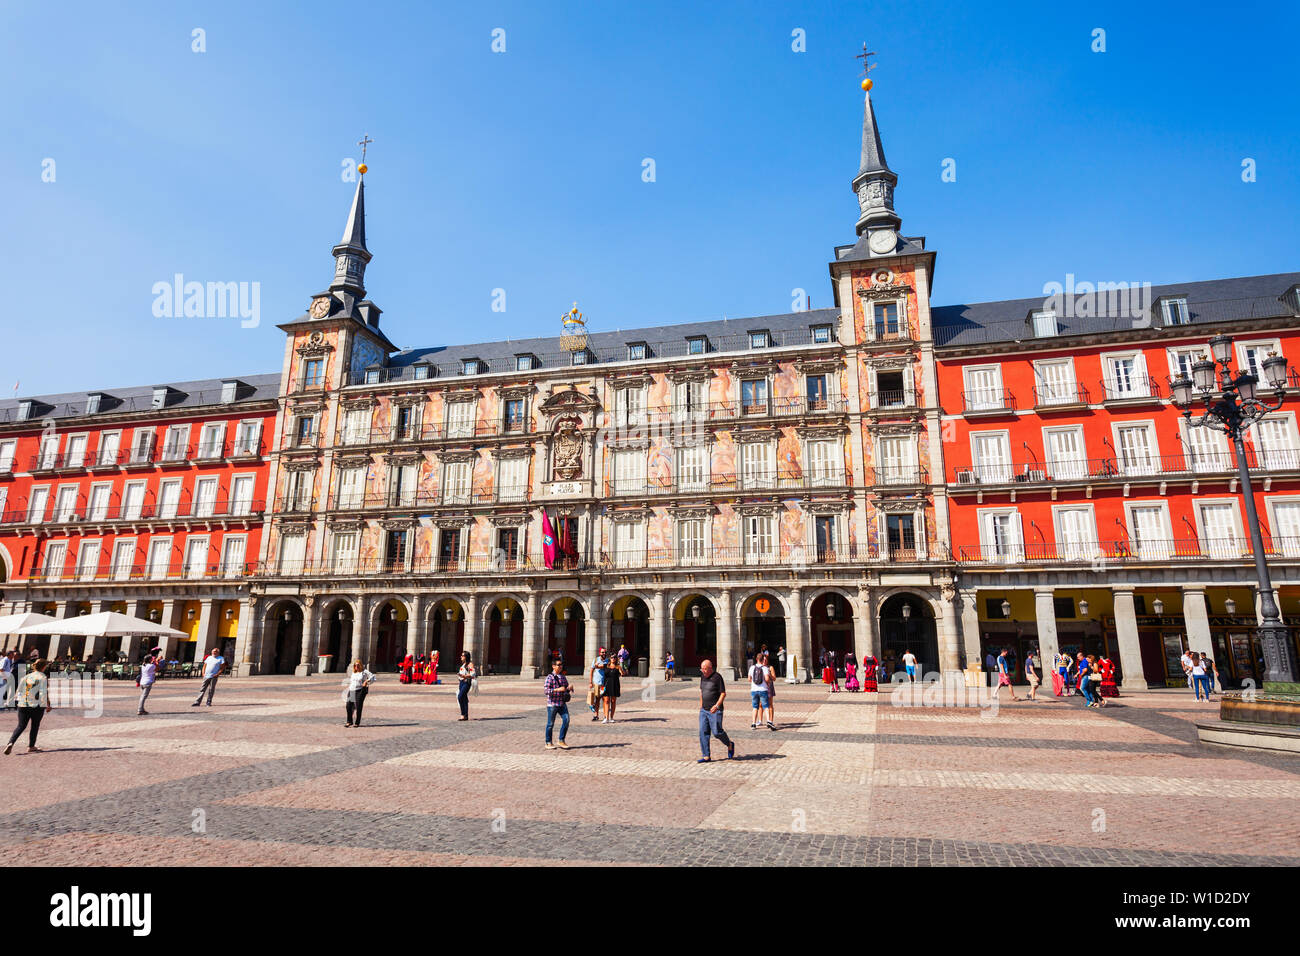 MADRID, Spanien - 20. SEPTEMBER 2017: Die Touristen an der Plaza Mayor oder Hauptplatz, einen zentralen Platz in der Stadt von Madrid, Spanien. Stockfoto